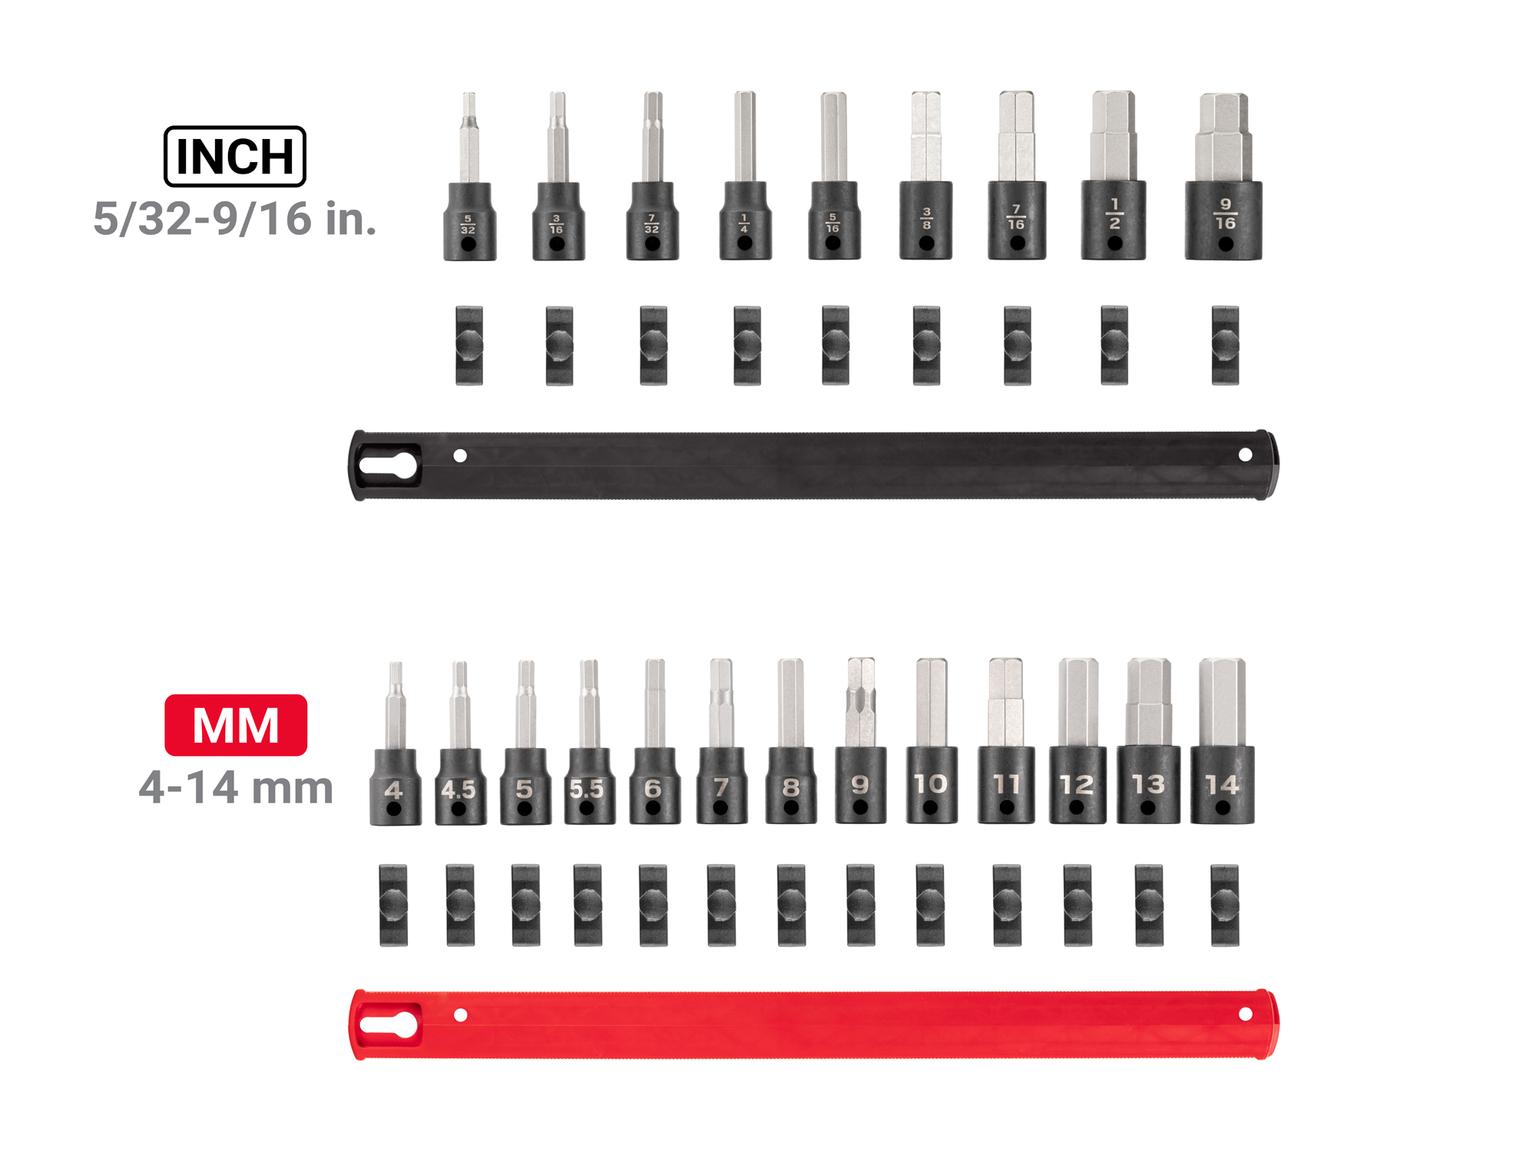 TEKTON SIB91201-T 3/8 Inch Drive Hex Impact Bit Socket Set with Rails, 22-Piece (5/32 - 9/16 in., 4 - 14 mm)